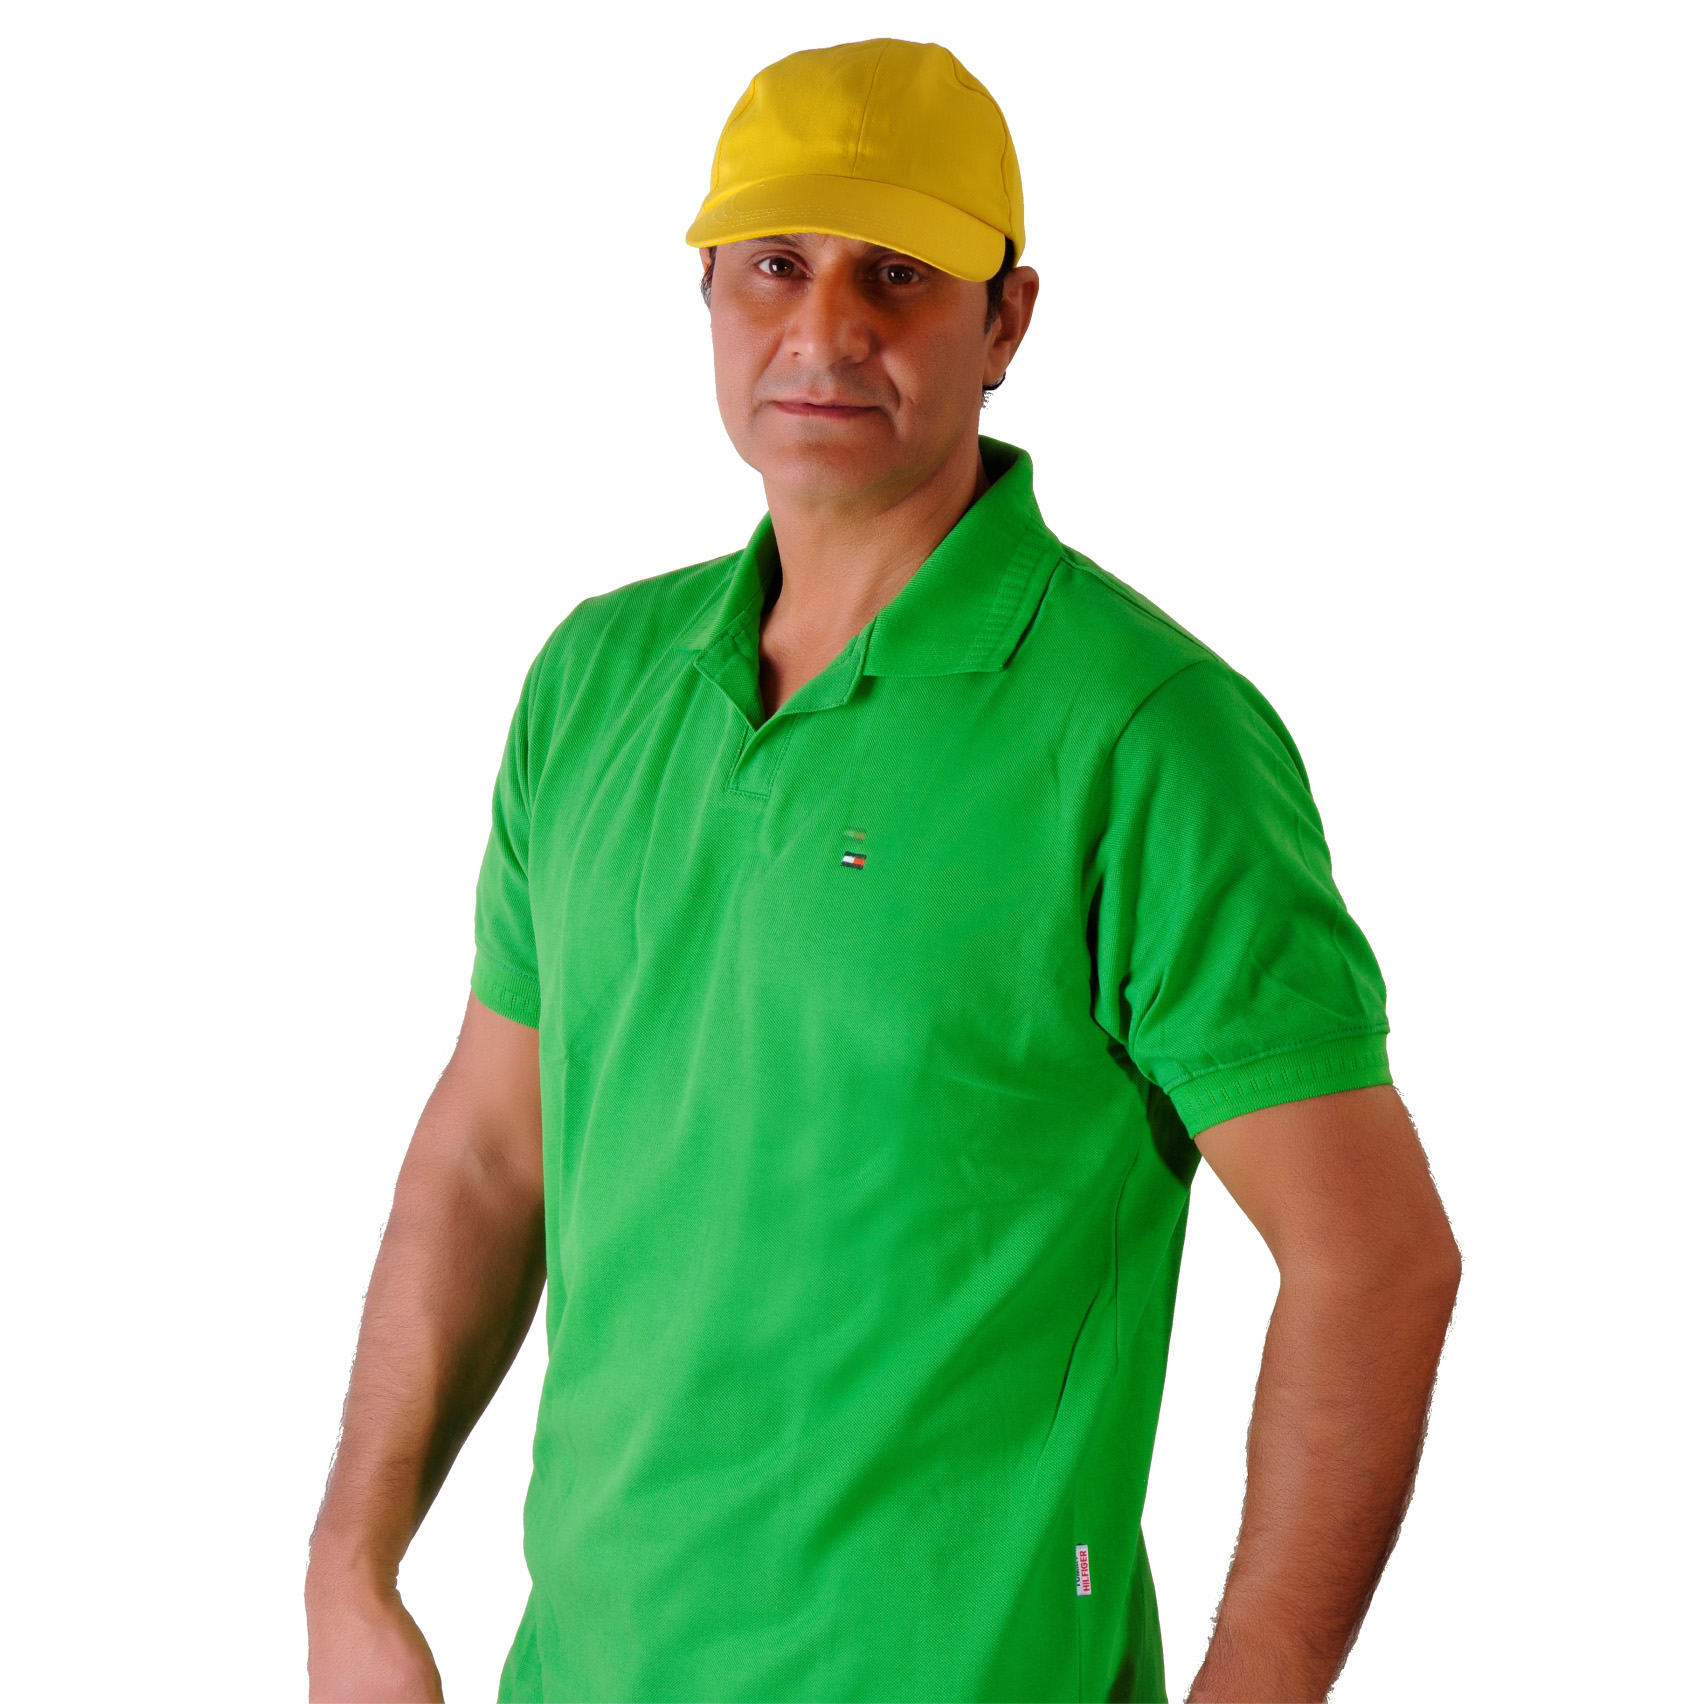 تی شرت سبز چمنی [سایز:S رنگ:سبز چمنی ]